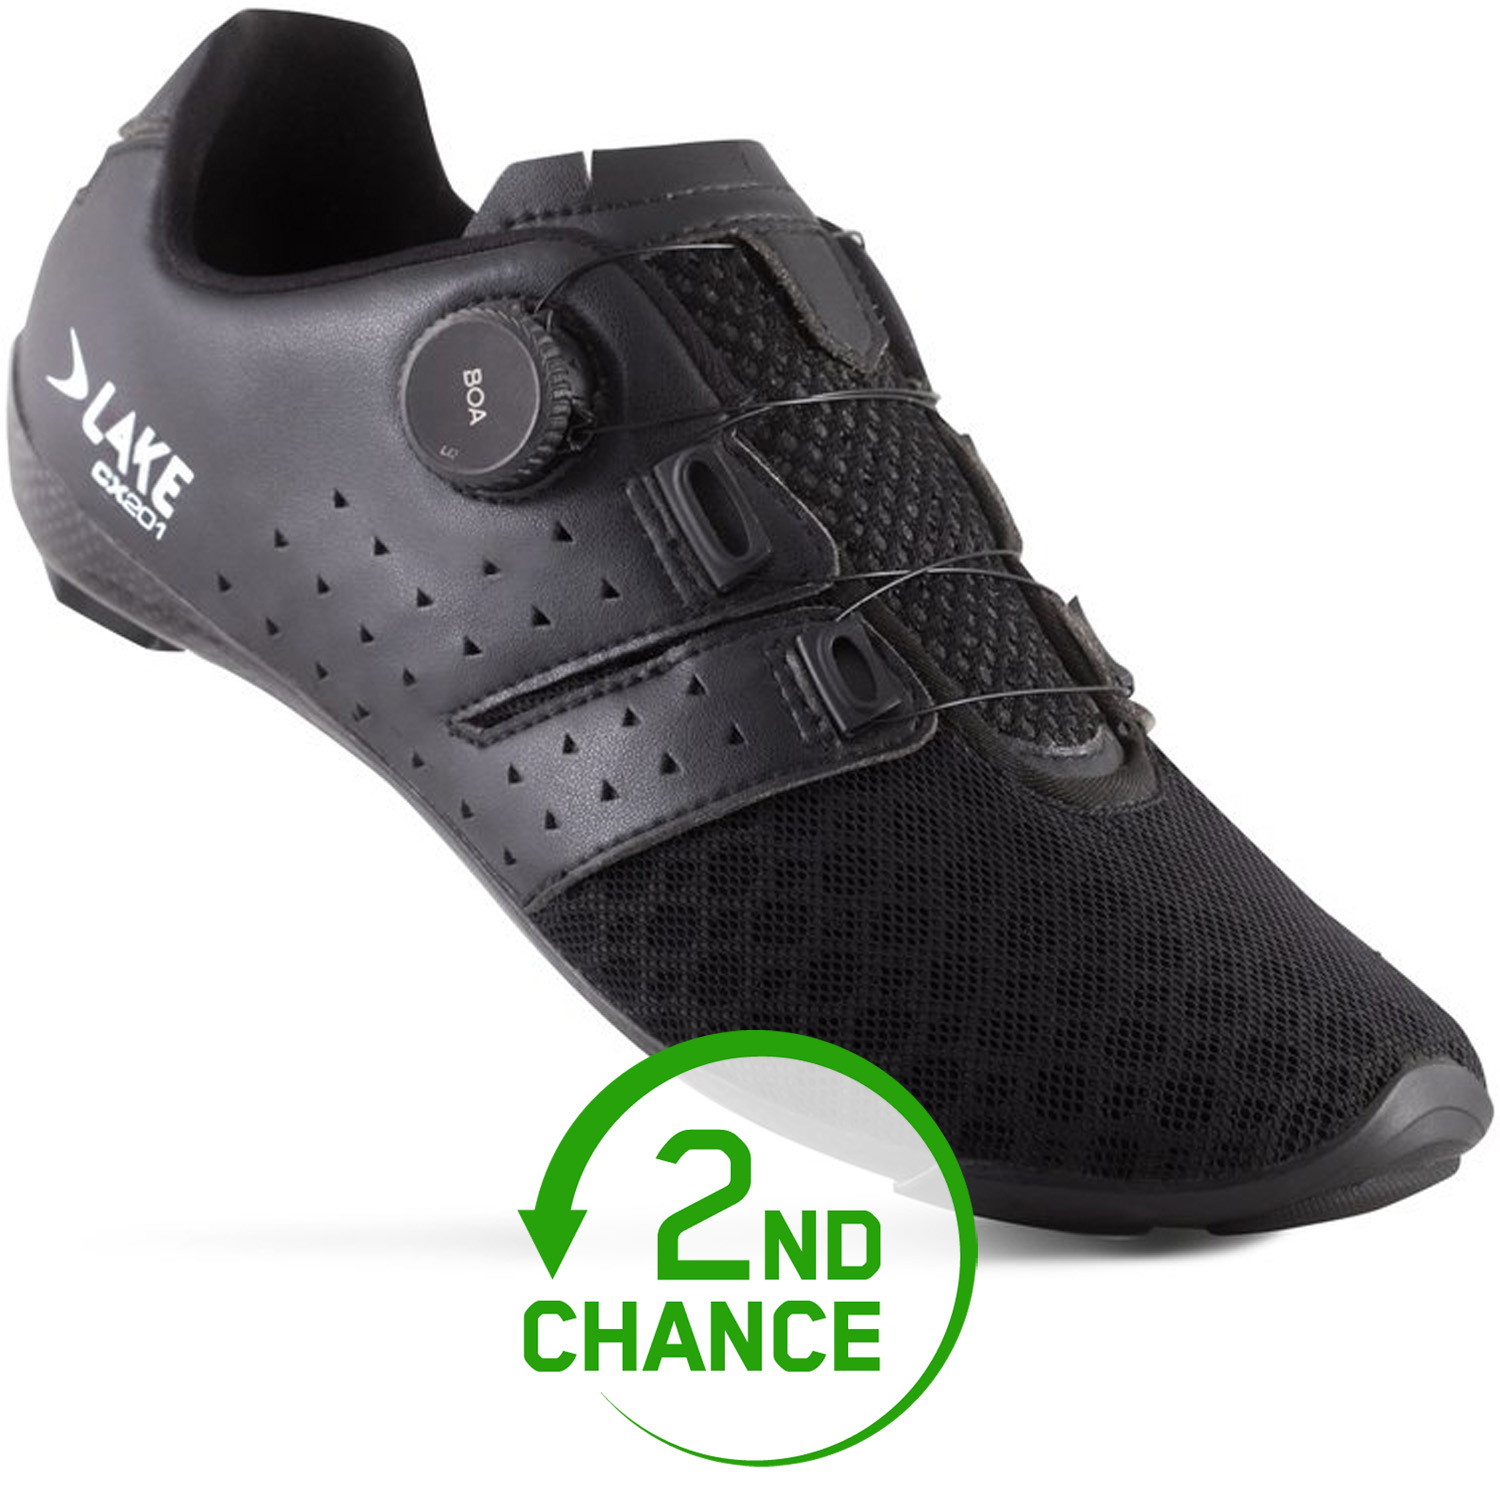 Produktbild von Lake CX201 Rennradschuhe Herren - schwarz /schwarz - B-Ware